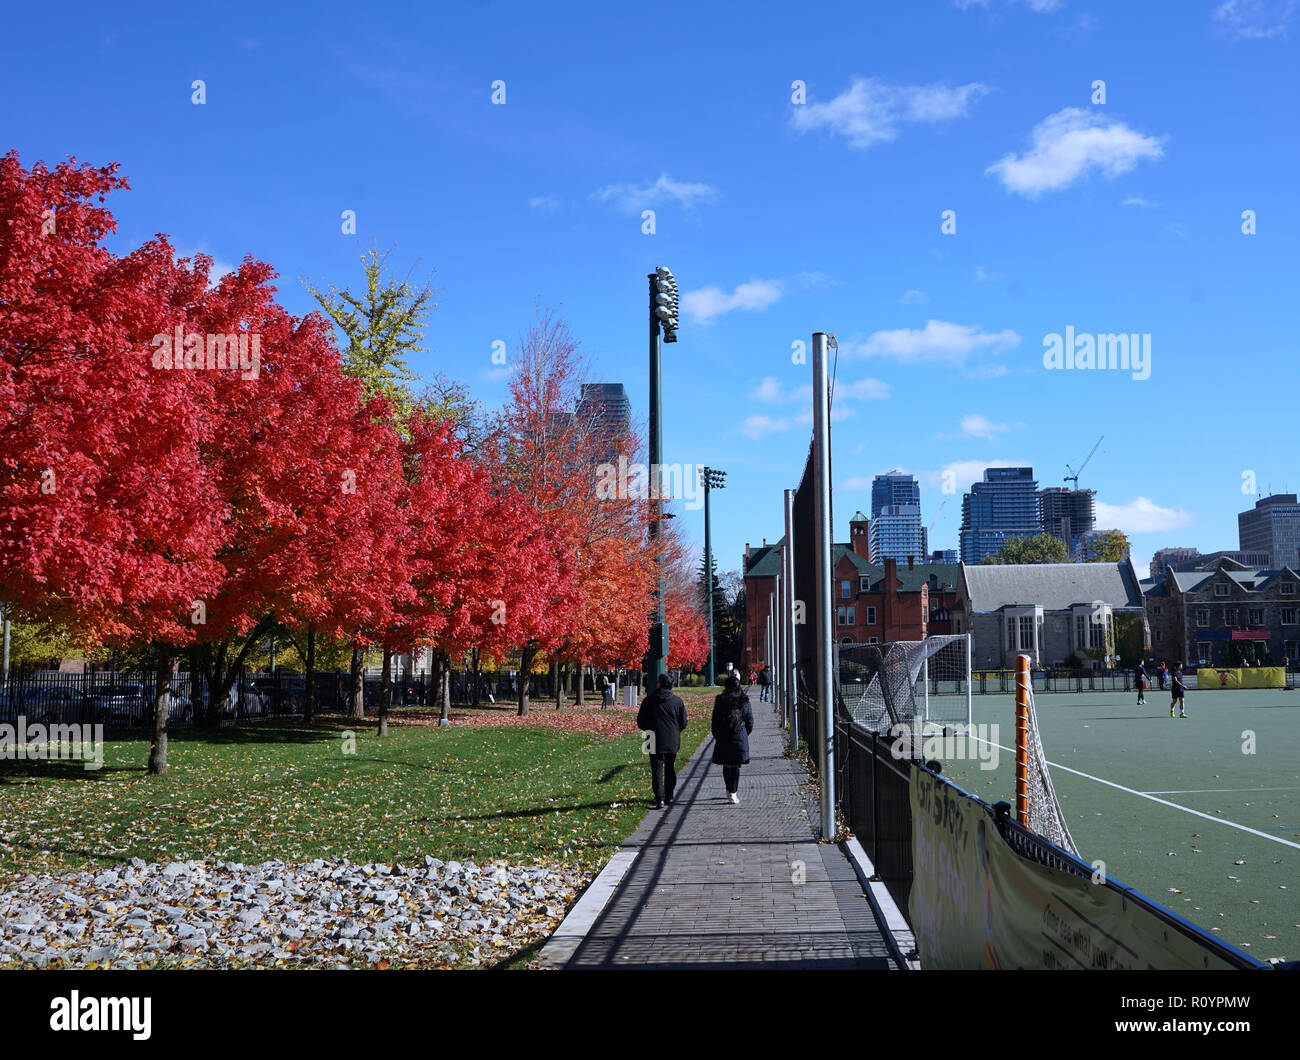 Passerelle sur le campus de l'université avec des couleurs d'automne Banque D'Images